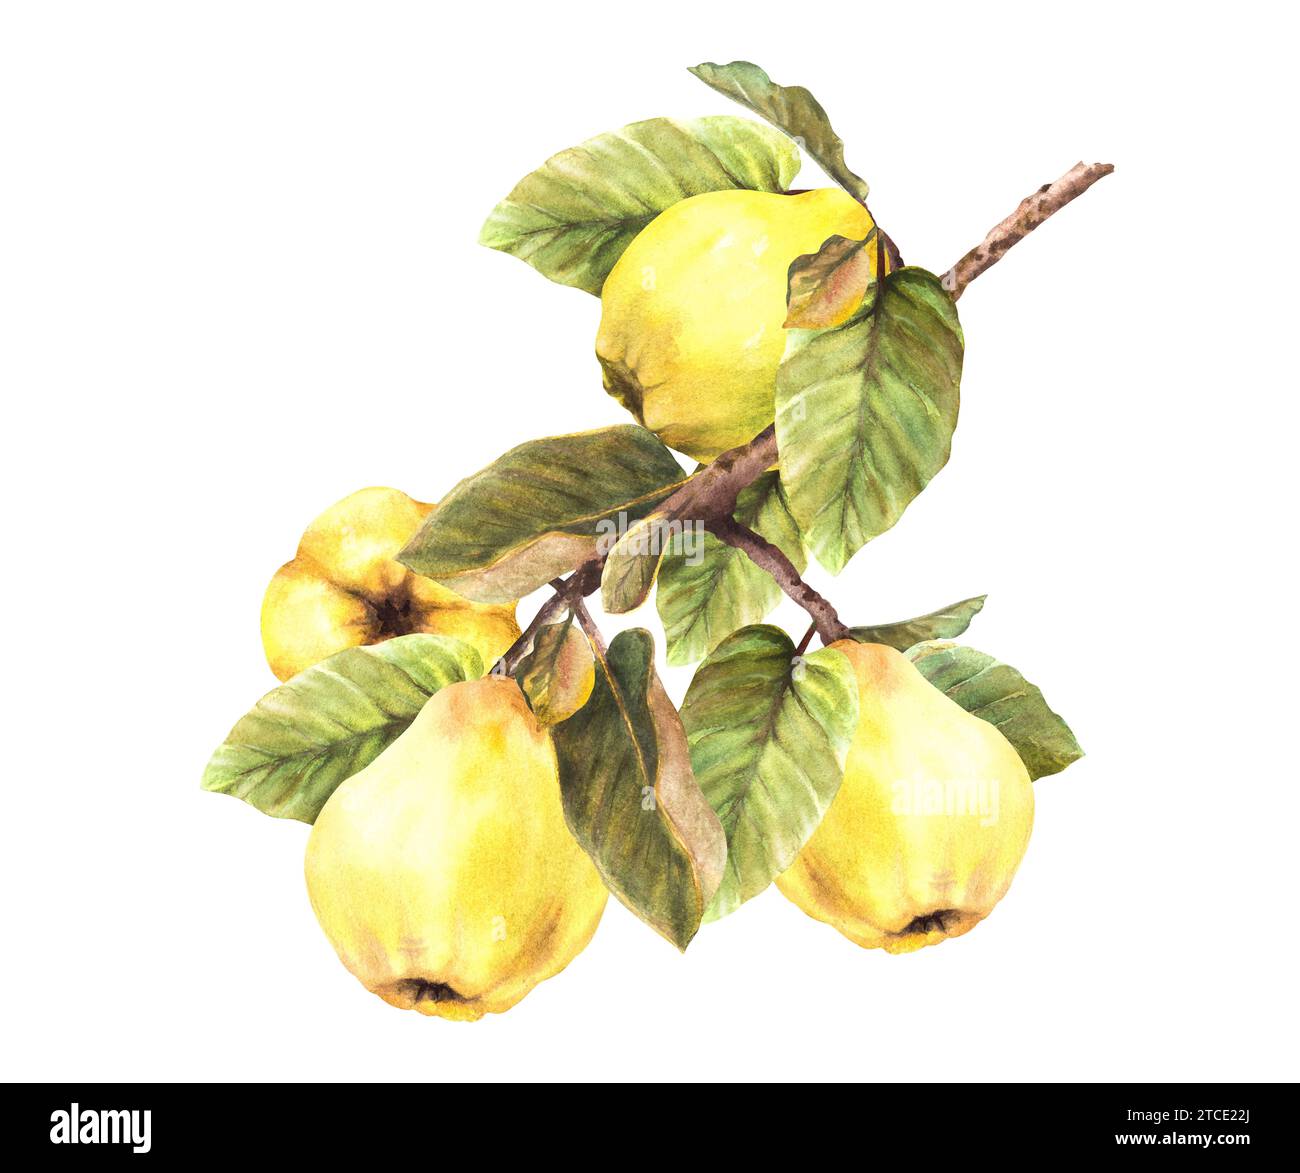 Handbemalt Aquarell gelbe Quitte ganze Früchte mit Blättern hängen an einem Ast, Bäume. Clipart-Illustration für Aufkleber, Logo, Speisen oder Getränke Stockfoto